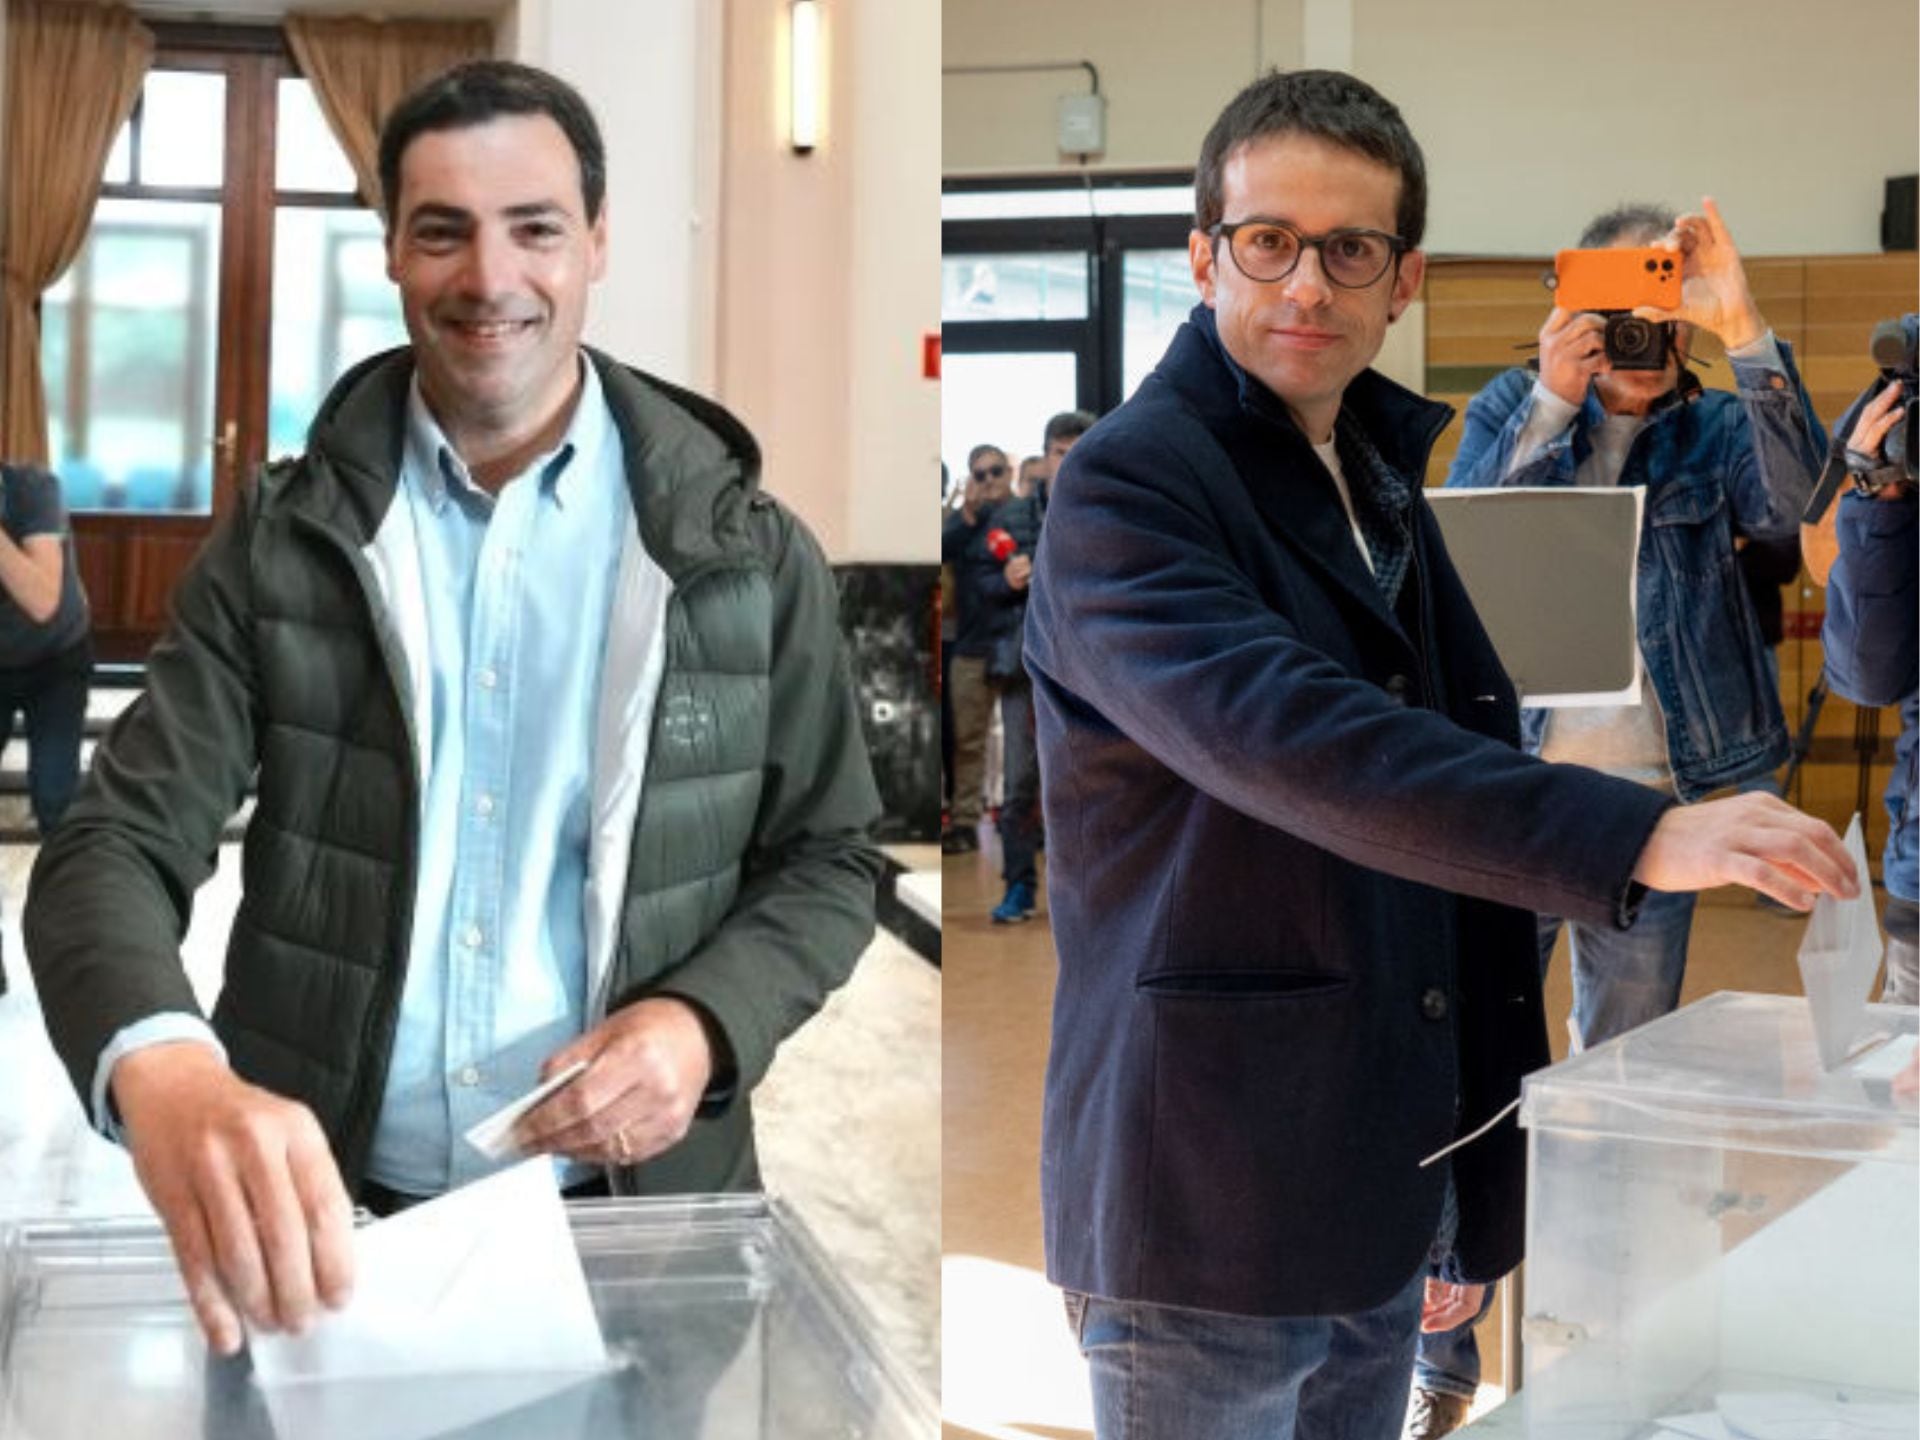 Bildu y PNV empatan en escaños en las elecciones vascas del 21A, según los sondeos al cierre de los colegios electorales